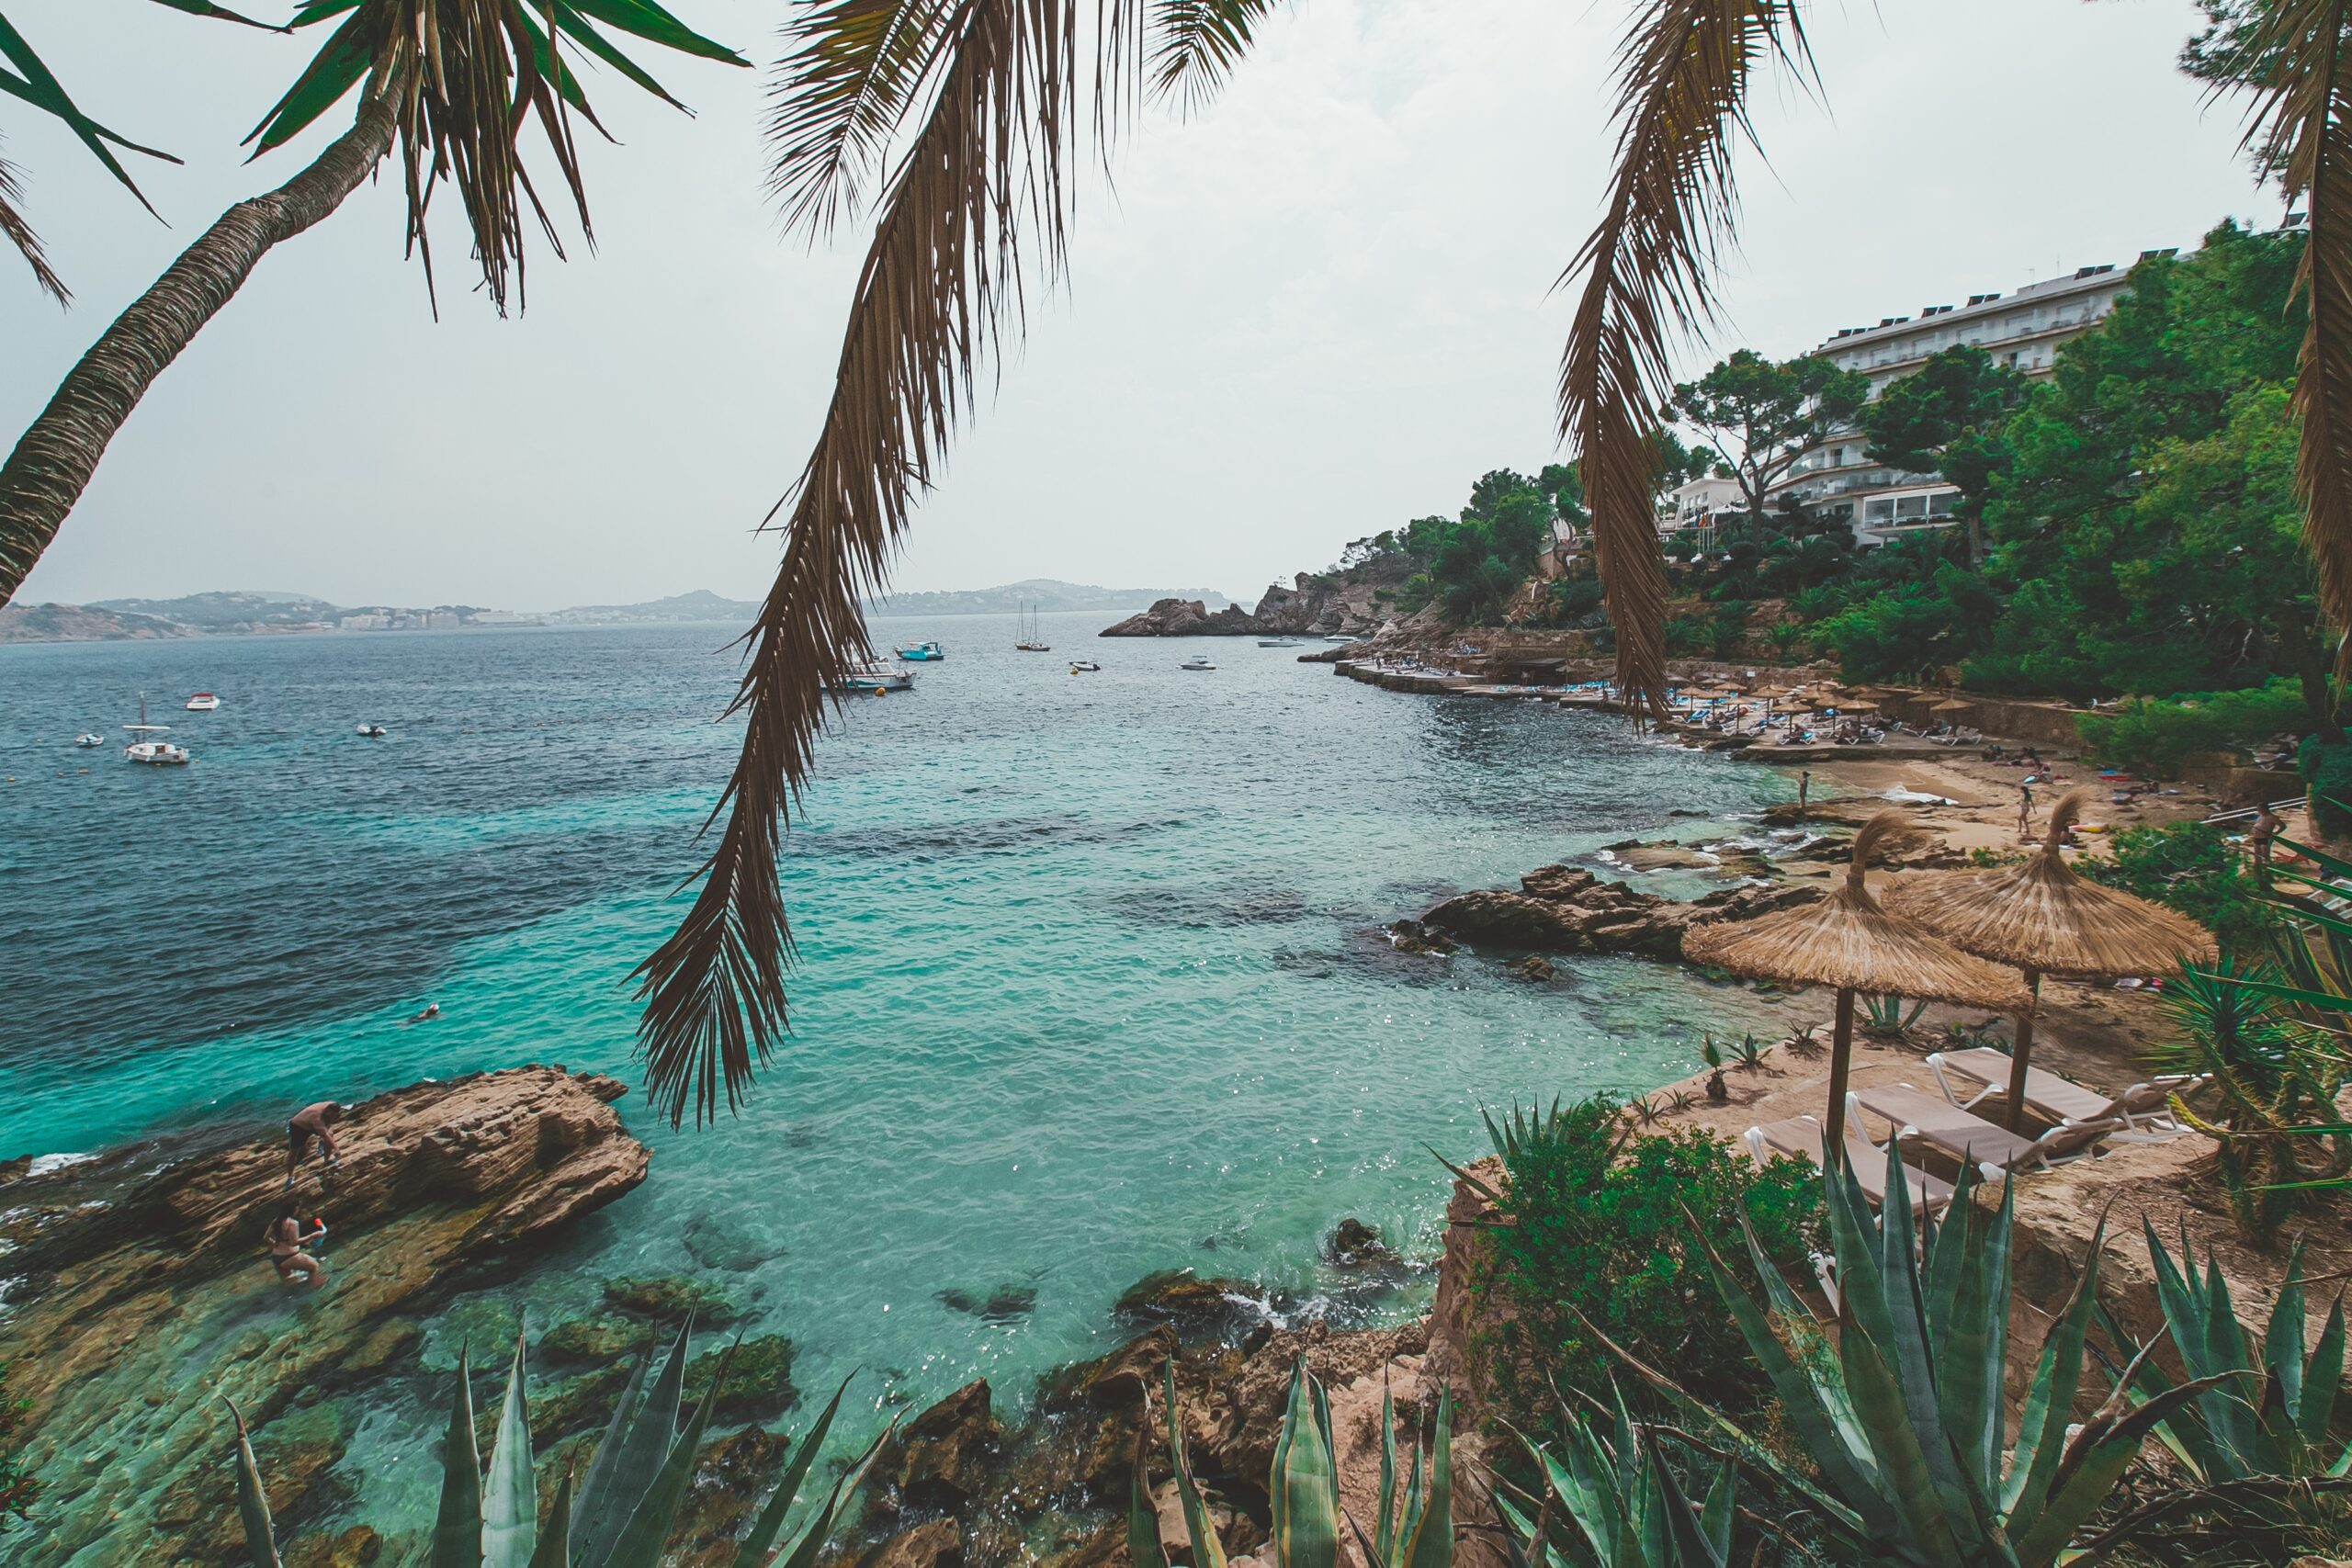 Mallorca in Spanien ist eins der besten Reiseziele im August. Hier sieht man eine Bucht mit Palmen und Strandliegen.